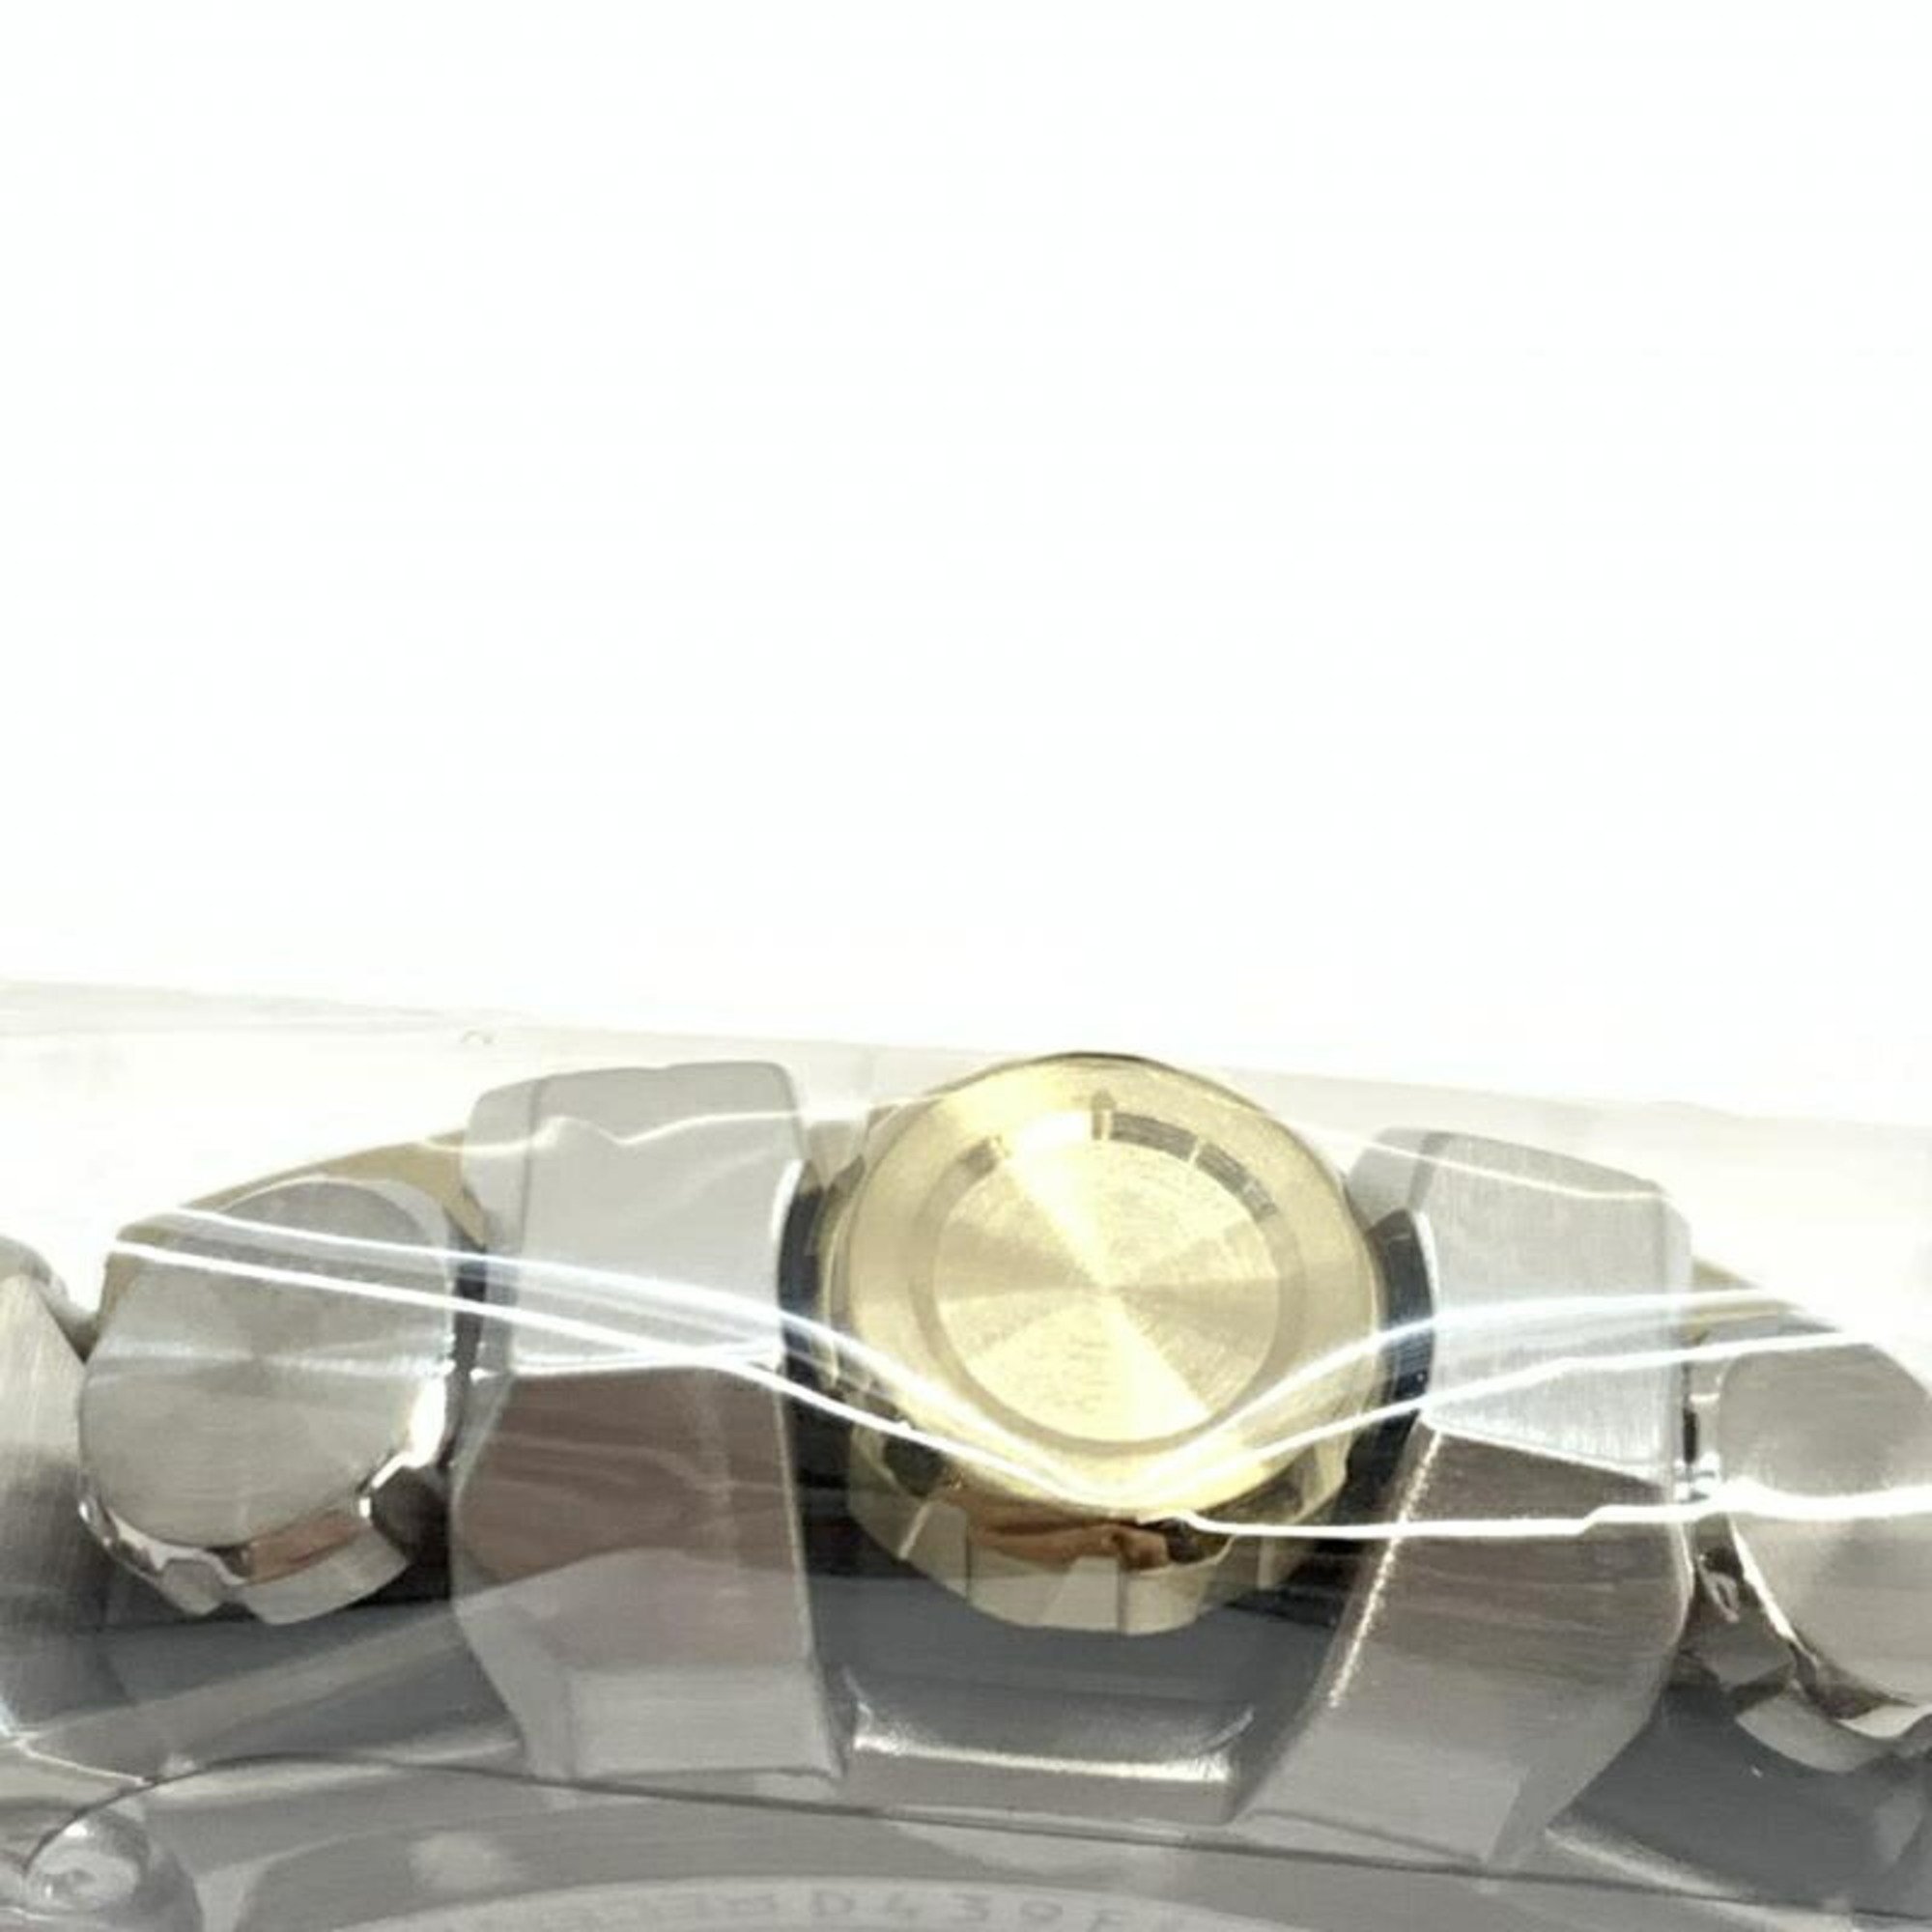 CASIO G-SHOCK MTG-B3000D-1A9JF Casio watch